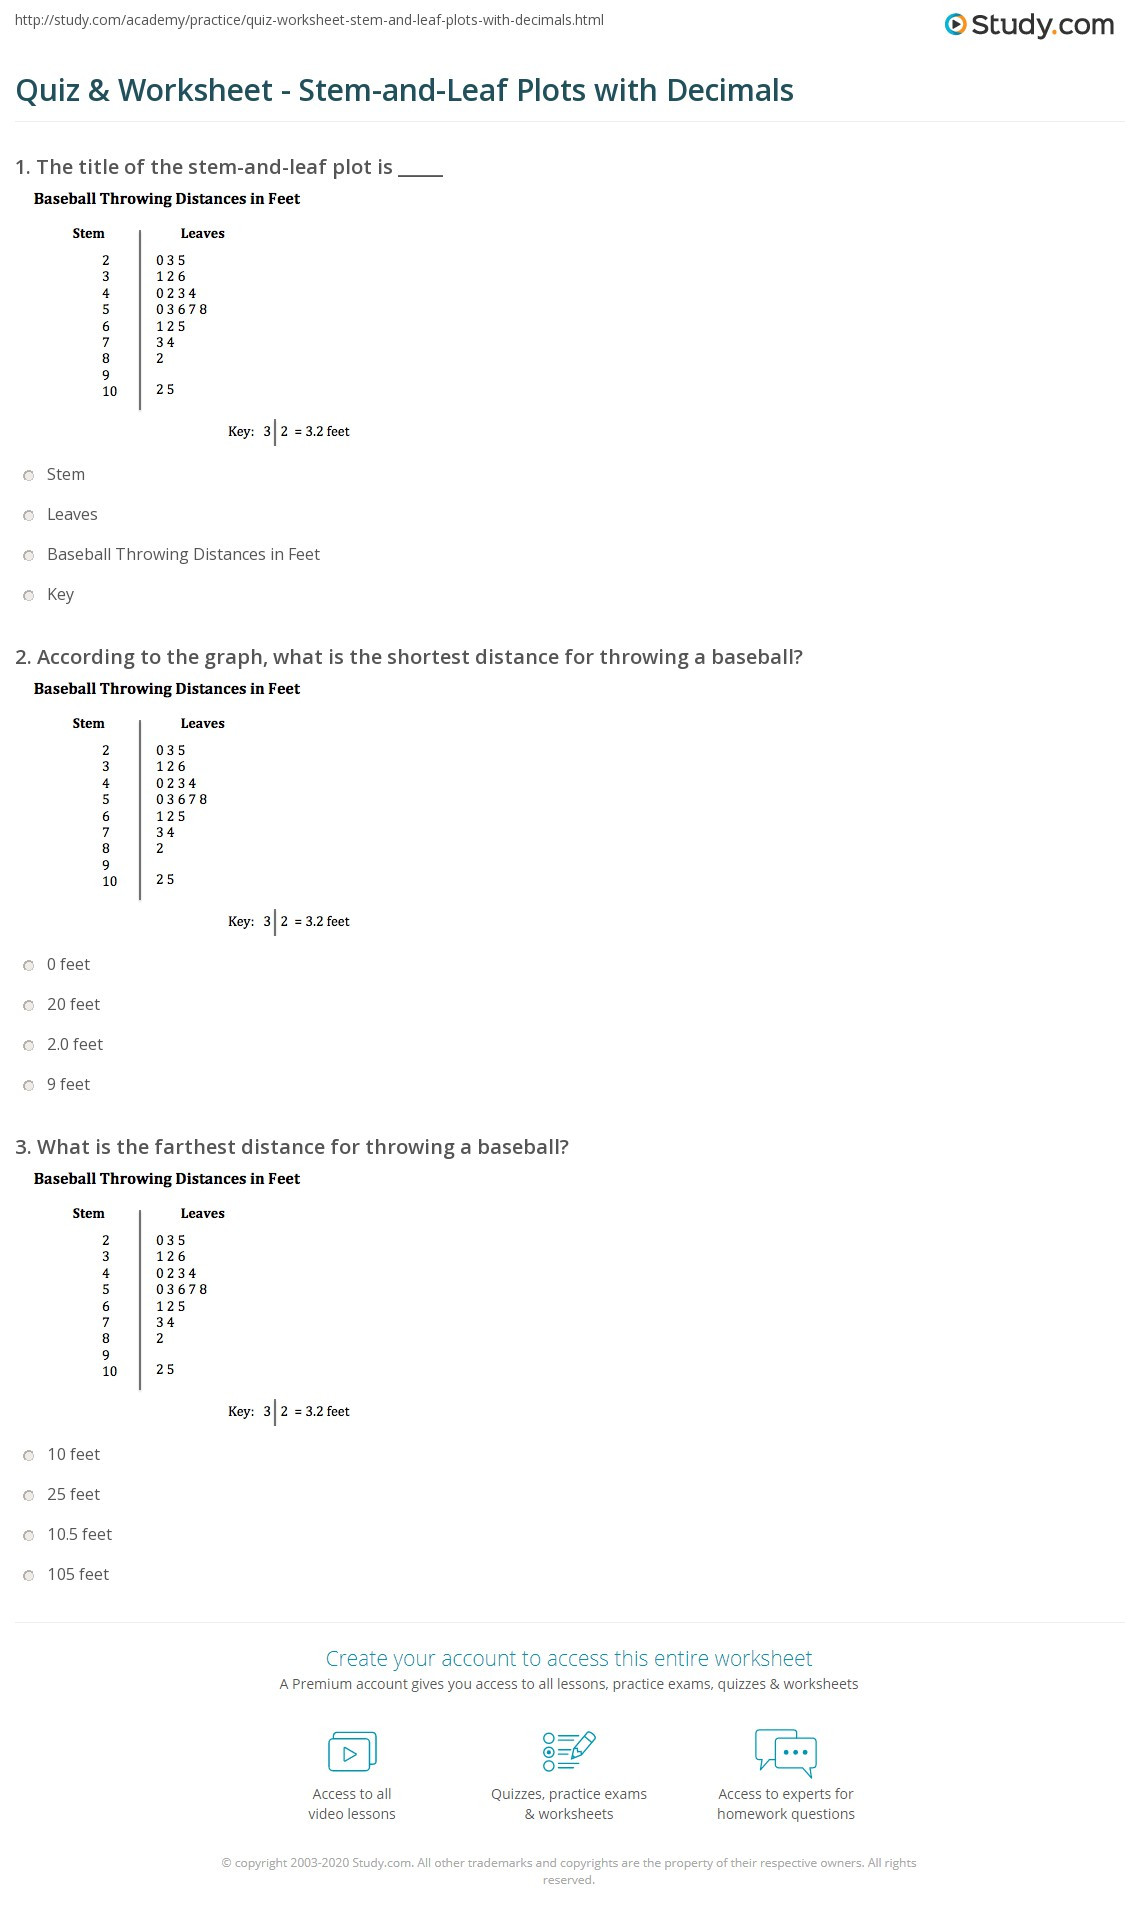 Stem and Leaf Plots Worksheet Quiz &amp; Worksheet Stem and Leaf Plots with Decimals